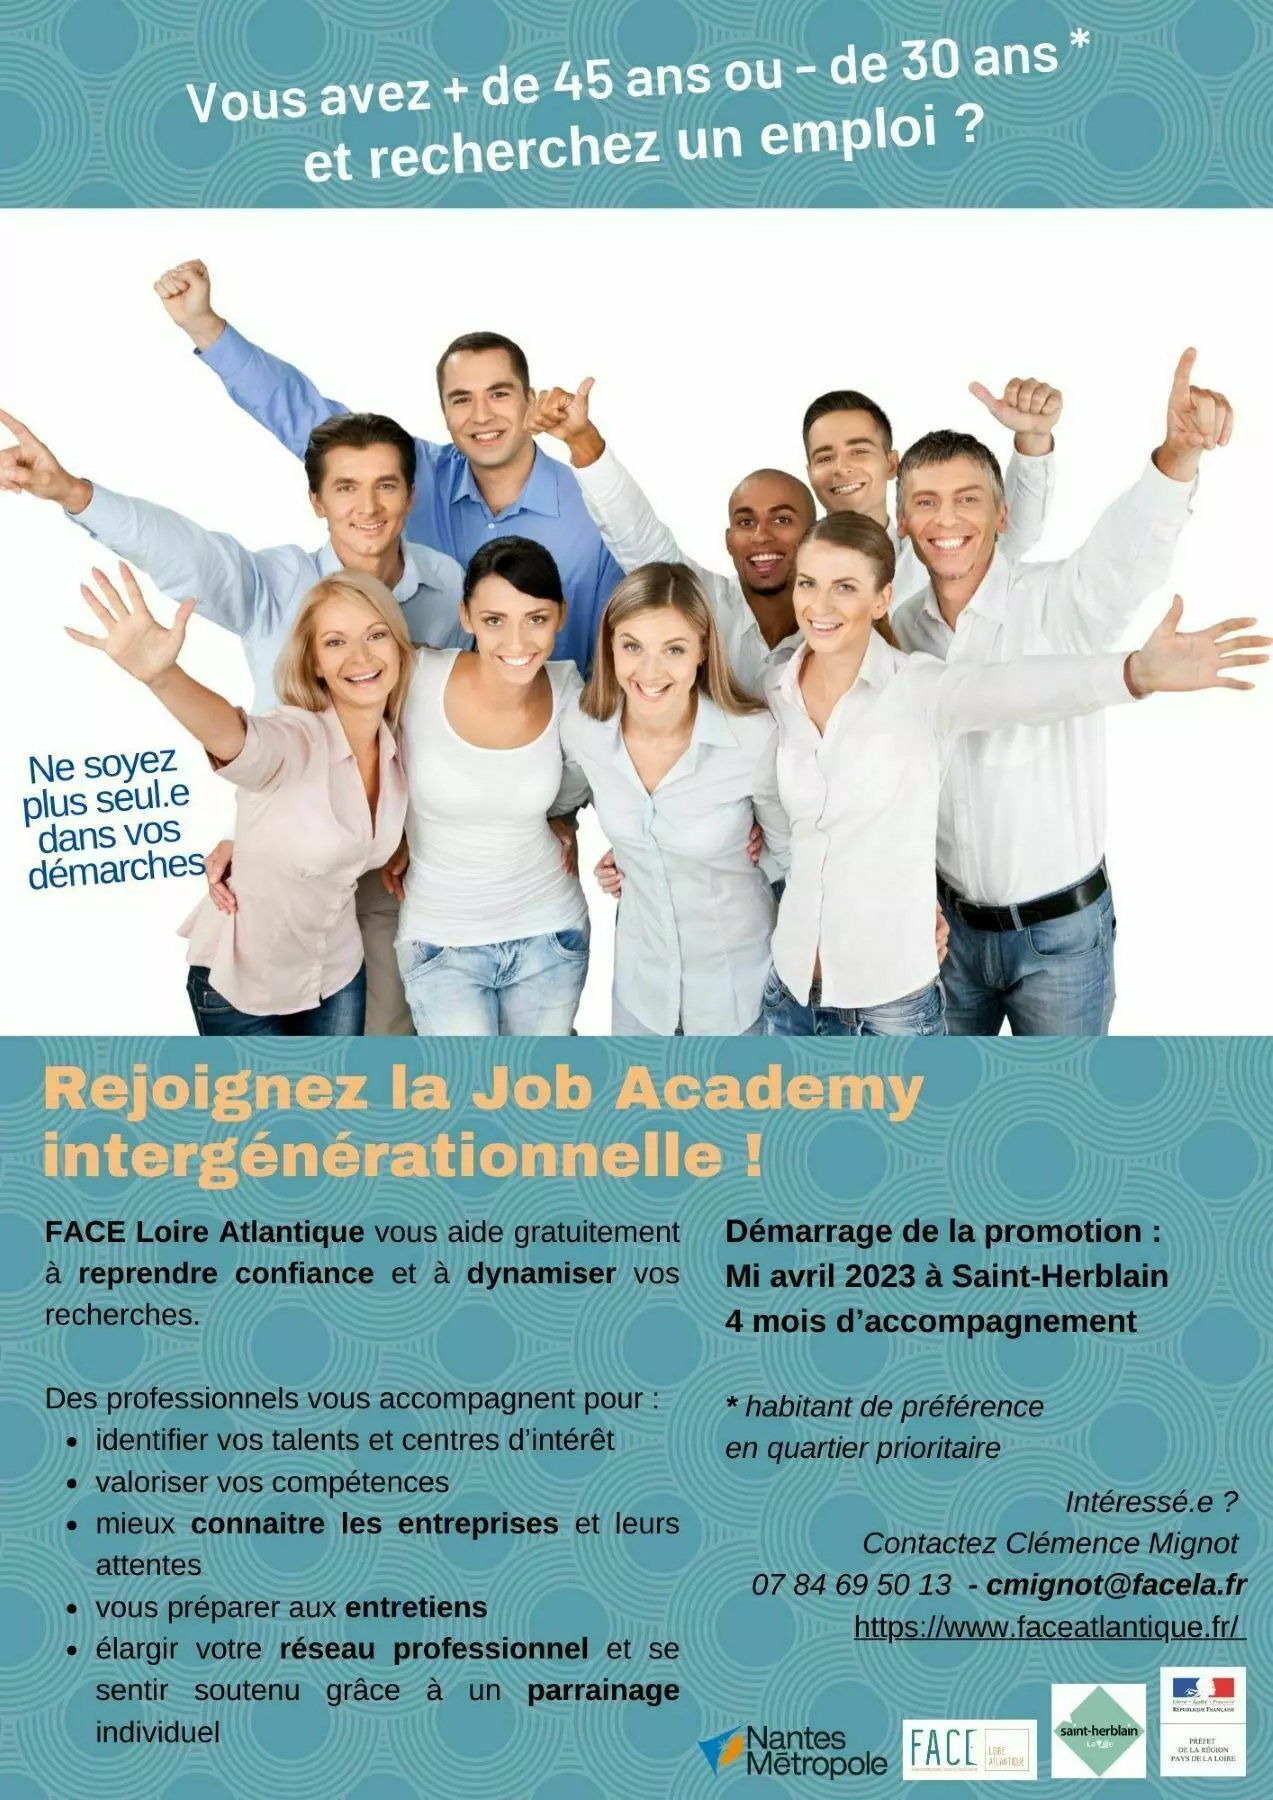 Promotions Ouvertures Projets-Rejoignez la prochaine promotion job academy intergénérationnelle